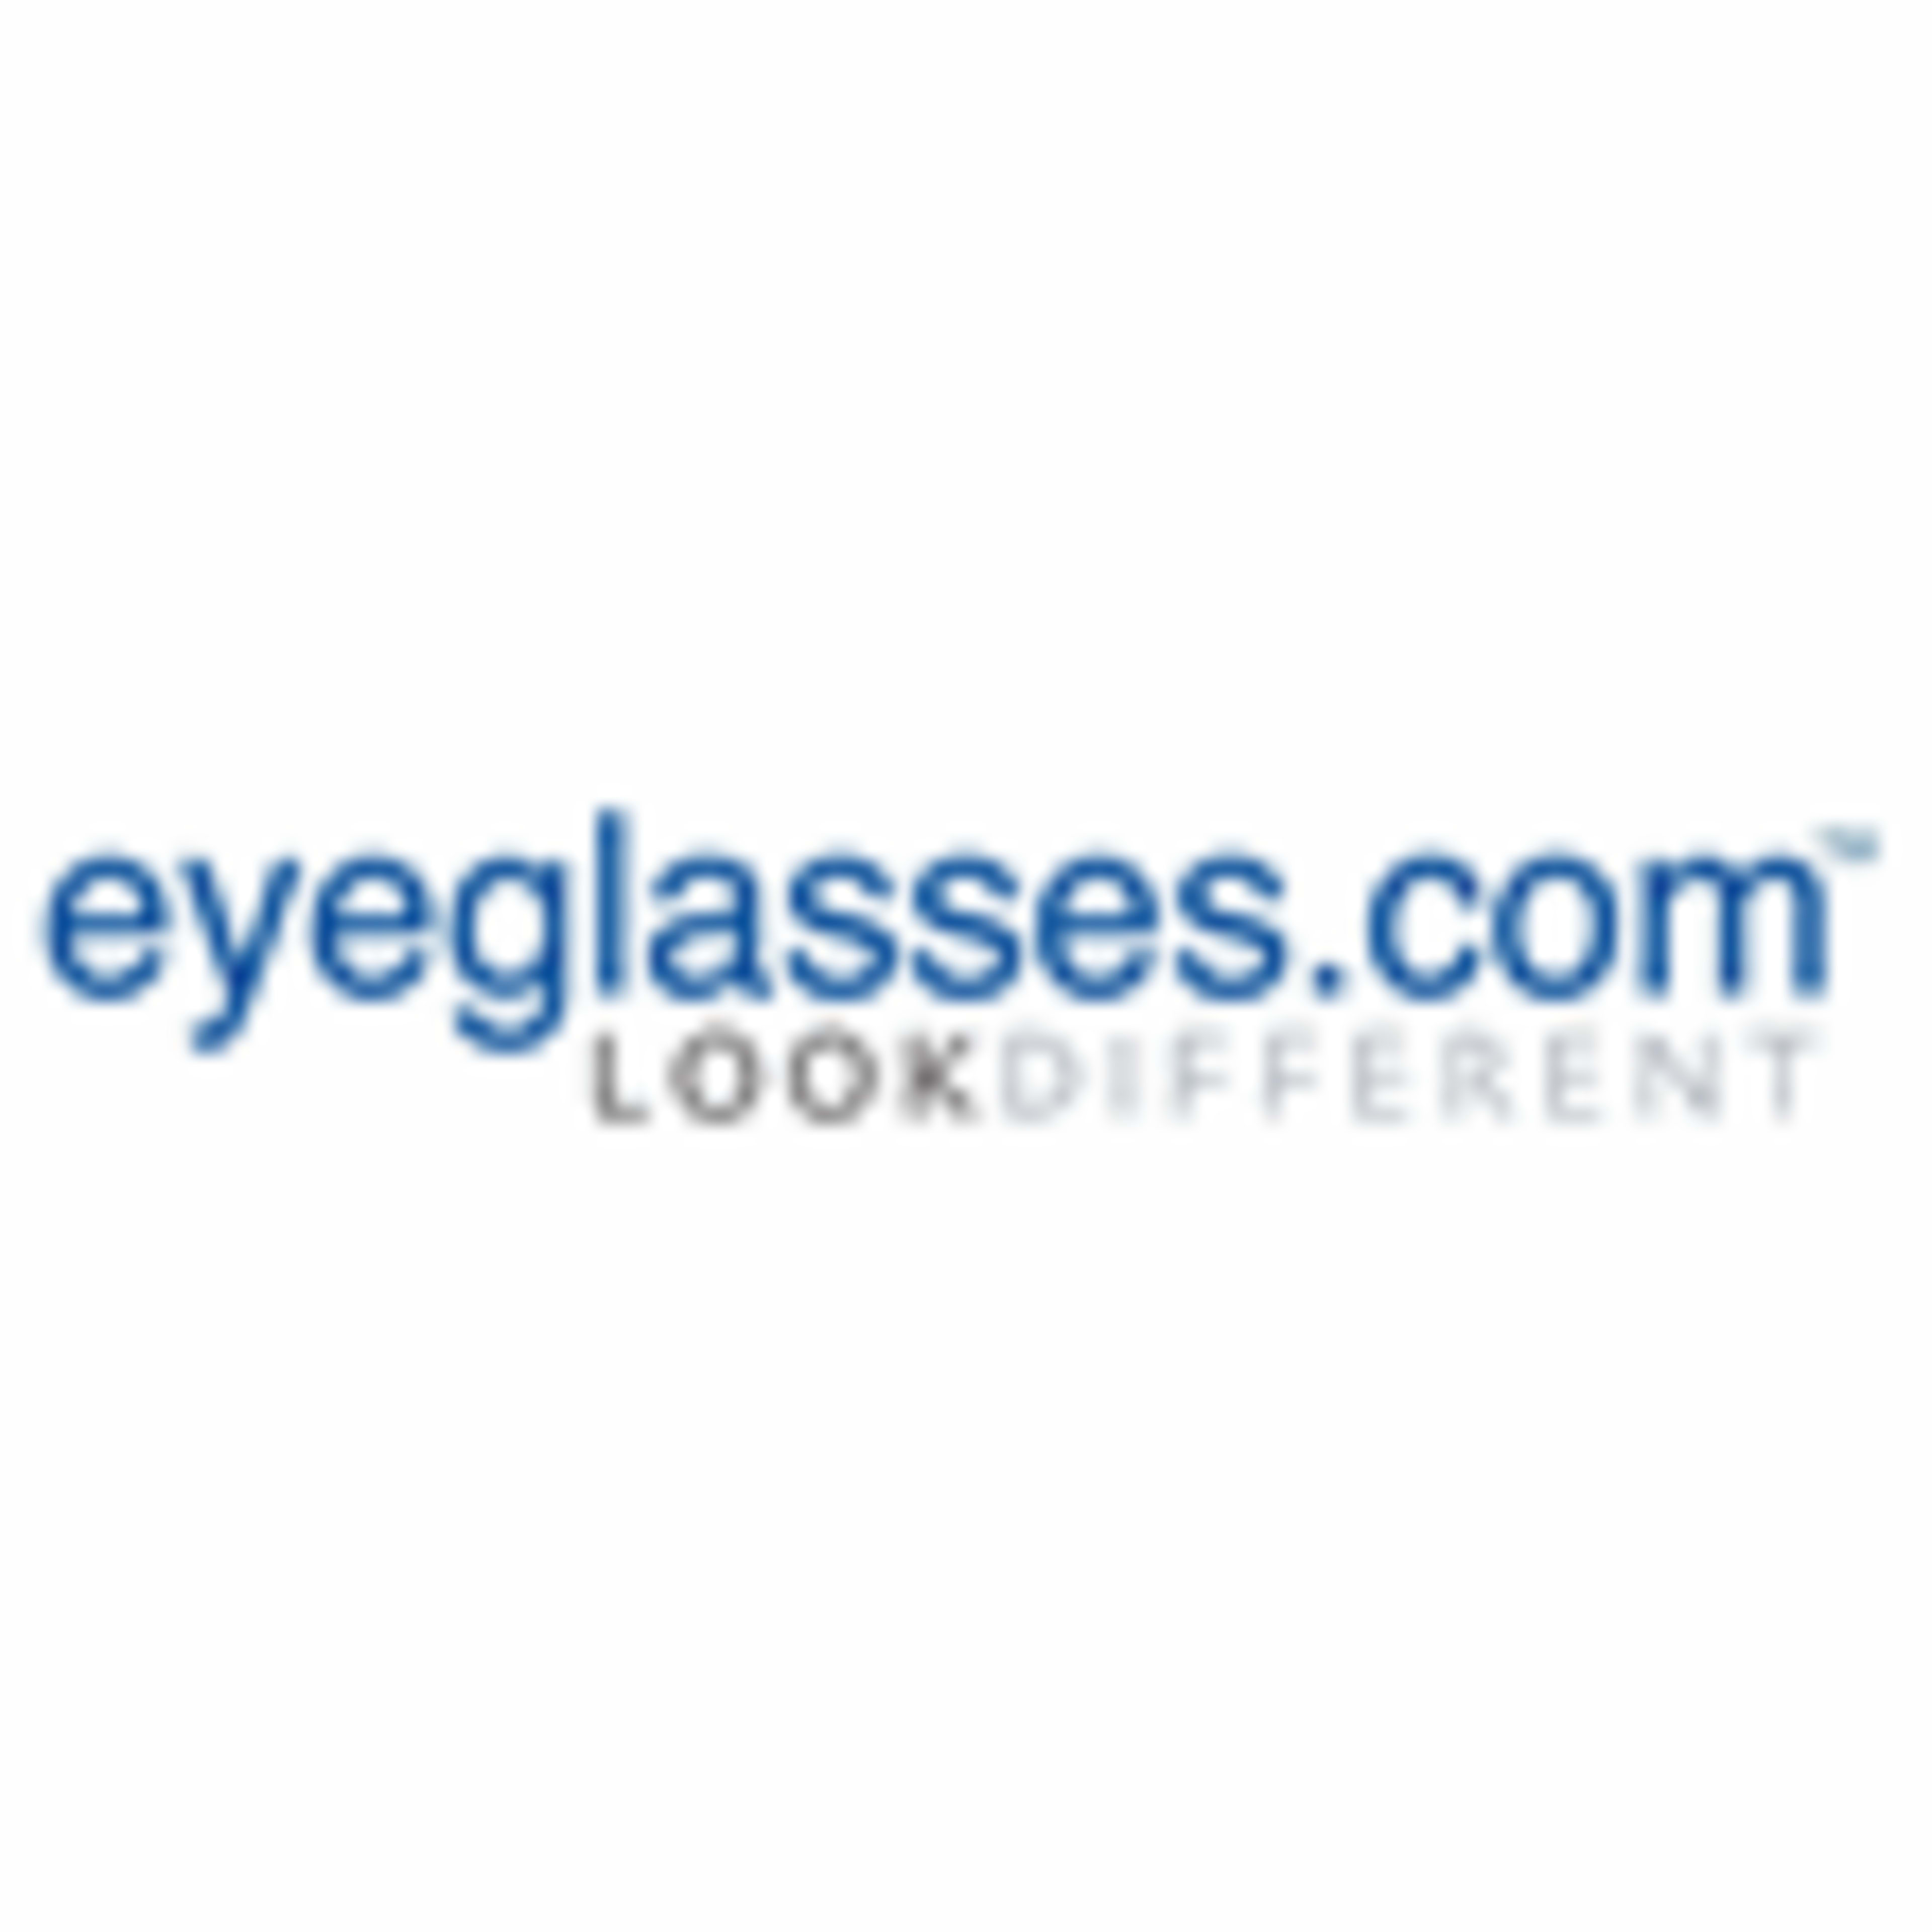 Eyeglasses.com Code